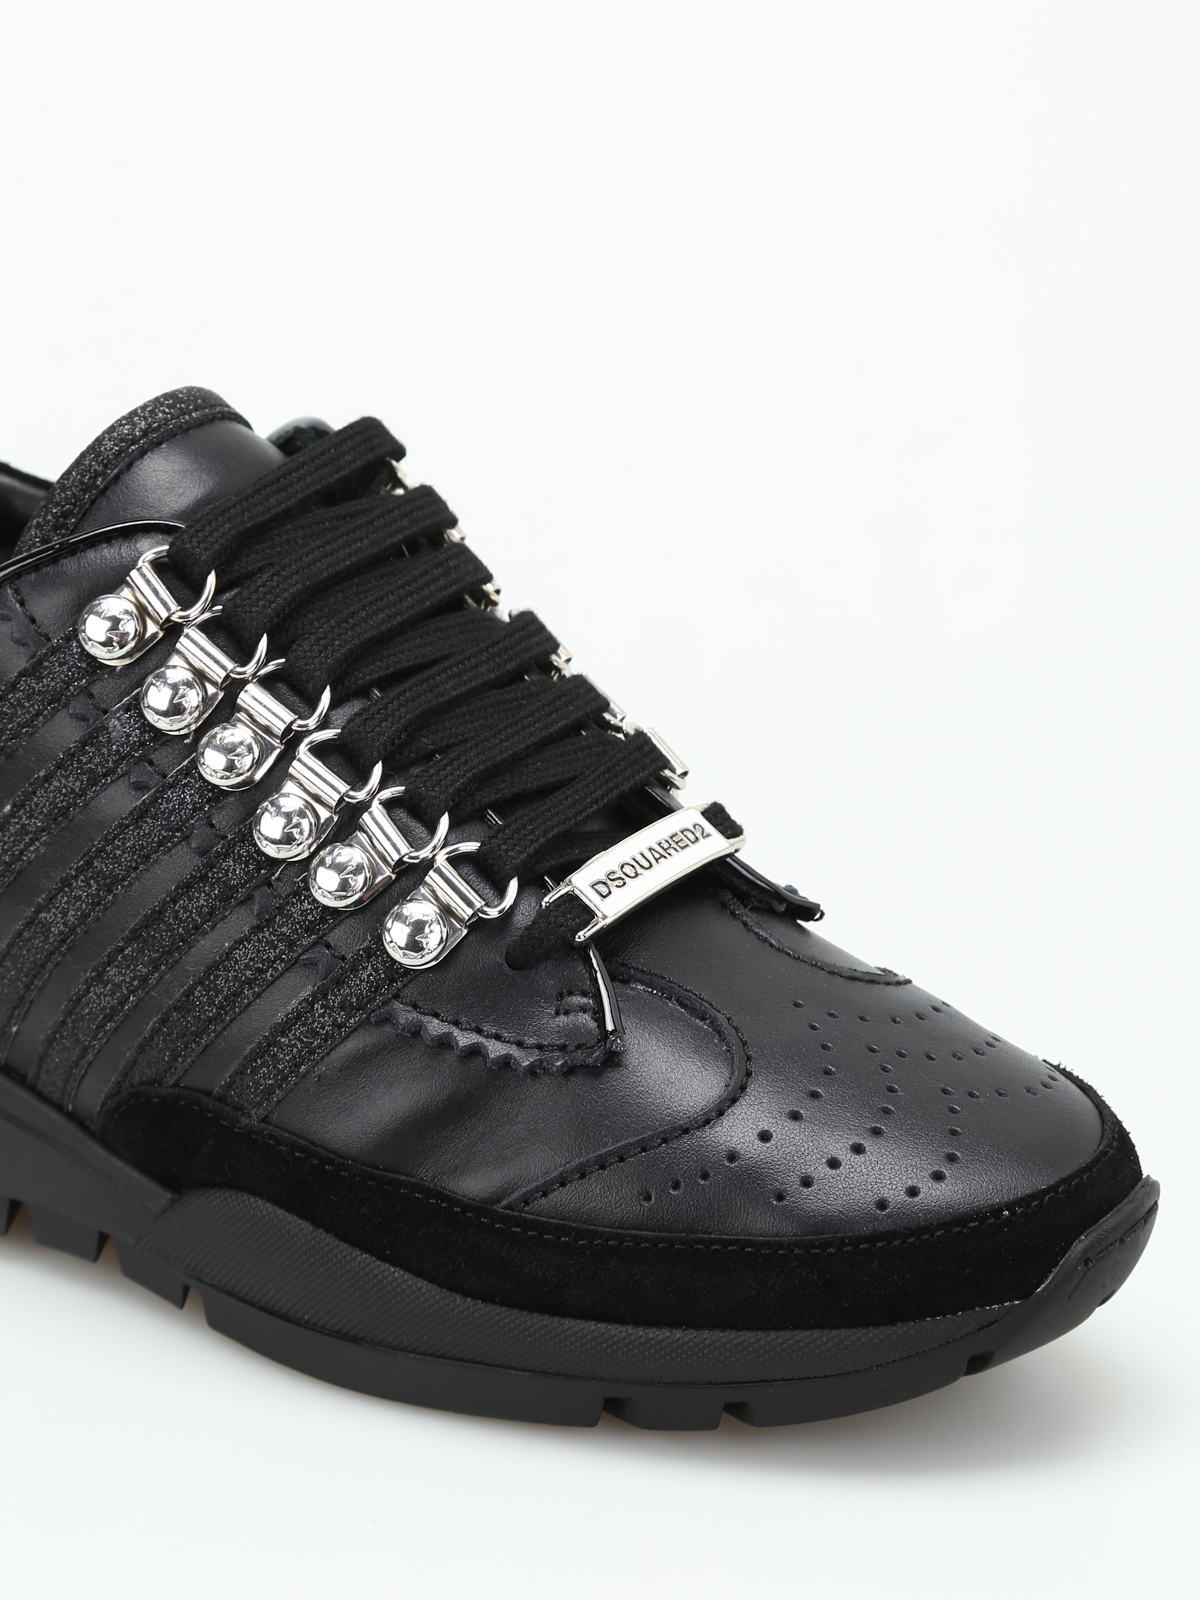 Dsquared2 - Sneaker 251 in pelle nera - sneakers - W17K2010652124